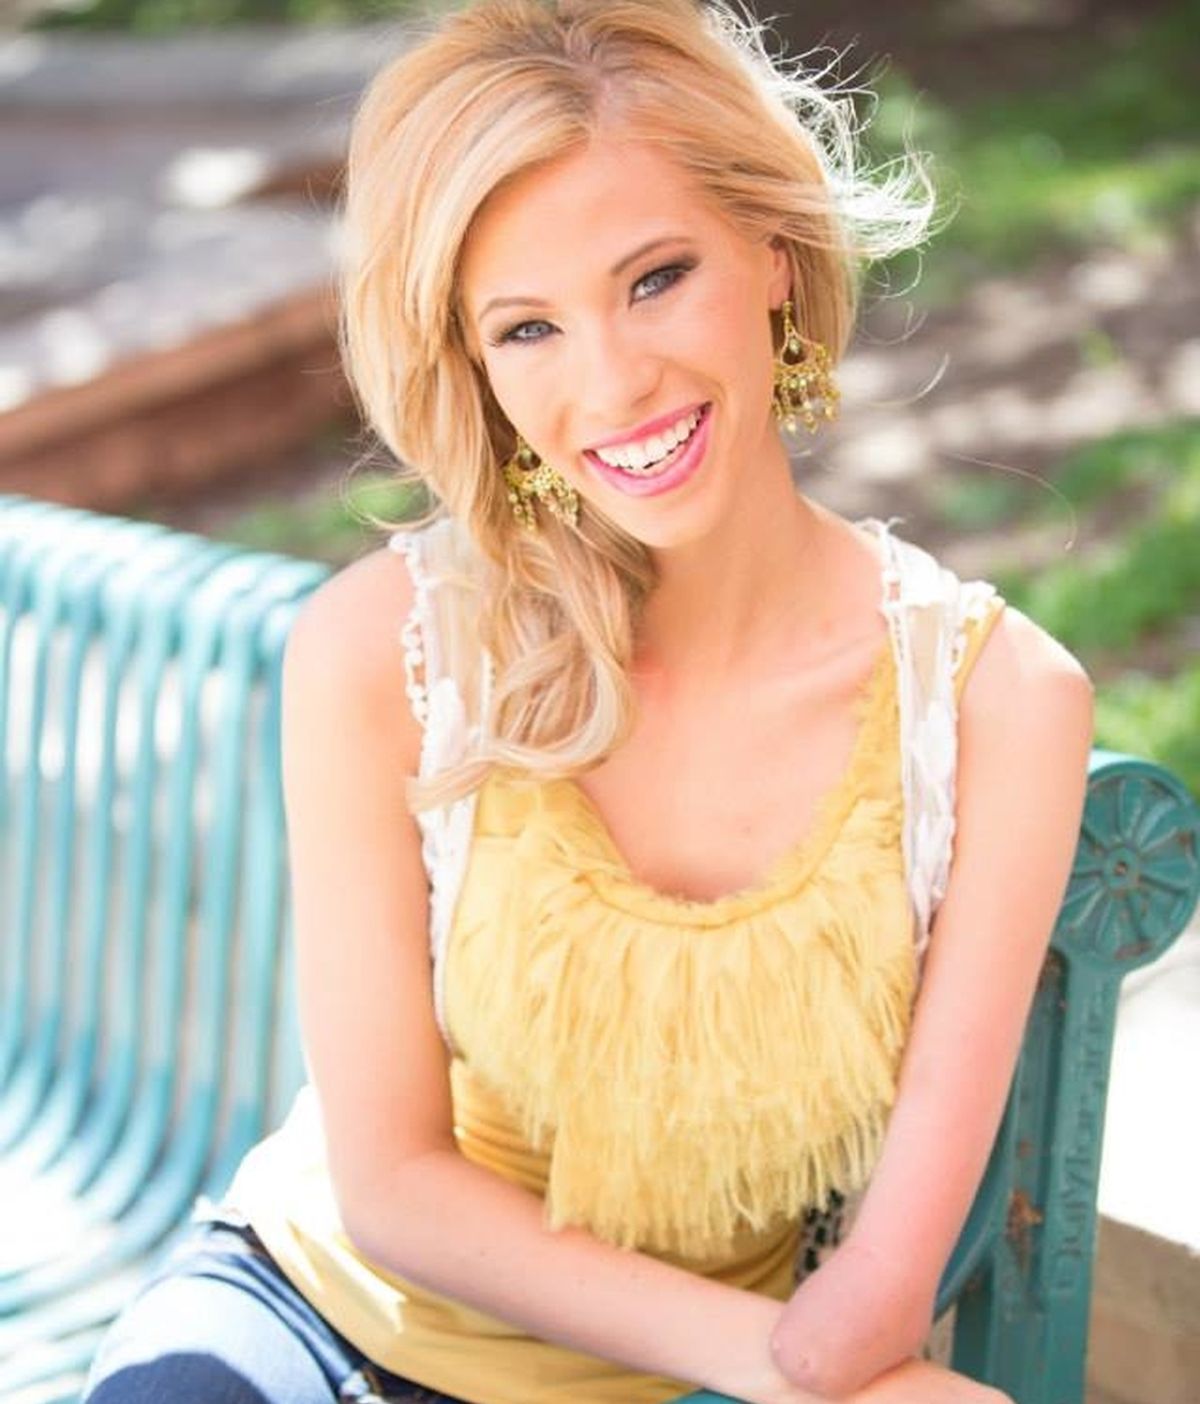 Nació sin un brazo y se ha convertido en Miss Iowa 2014